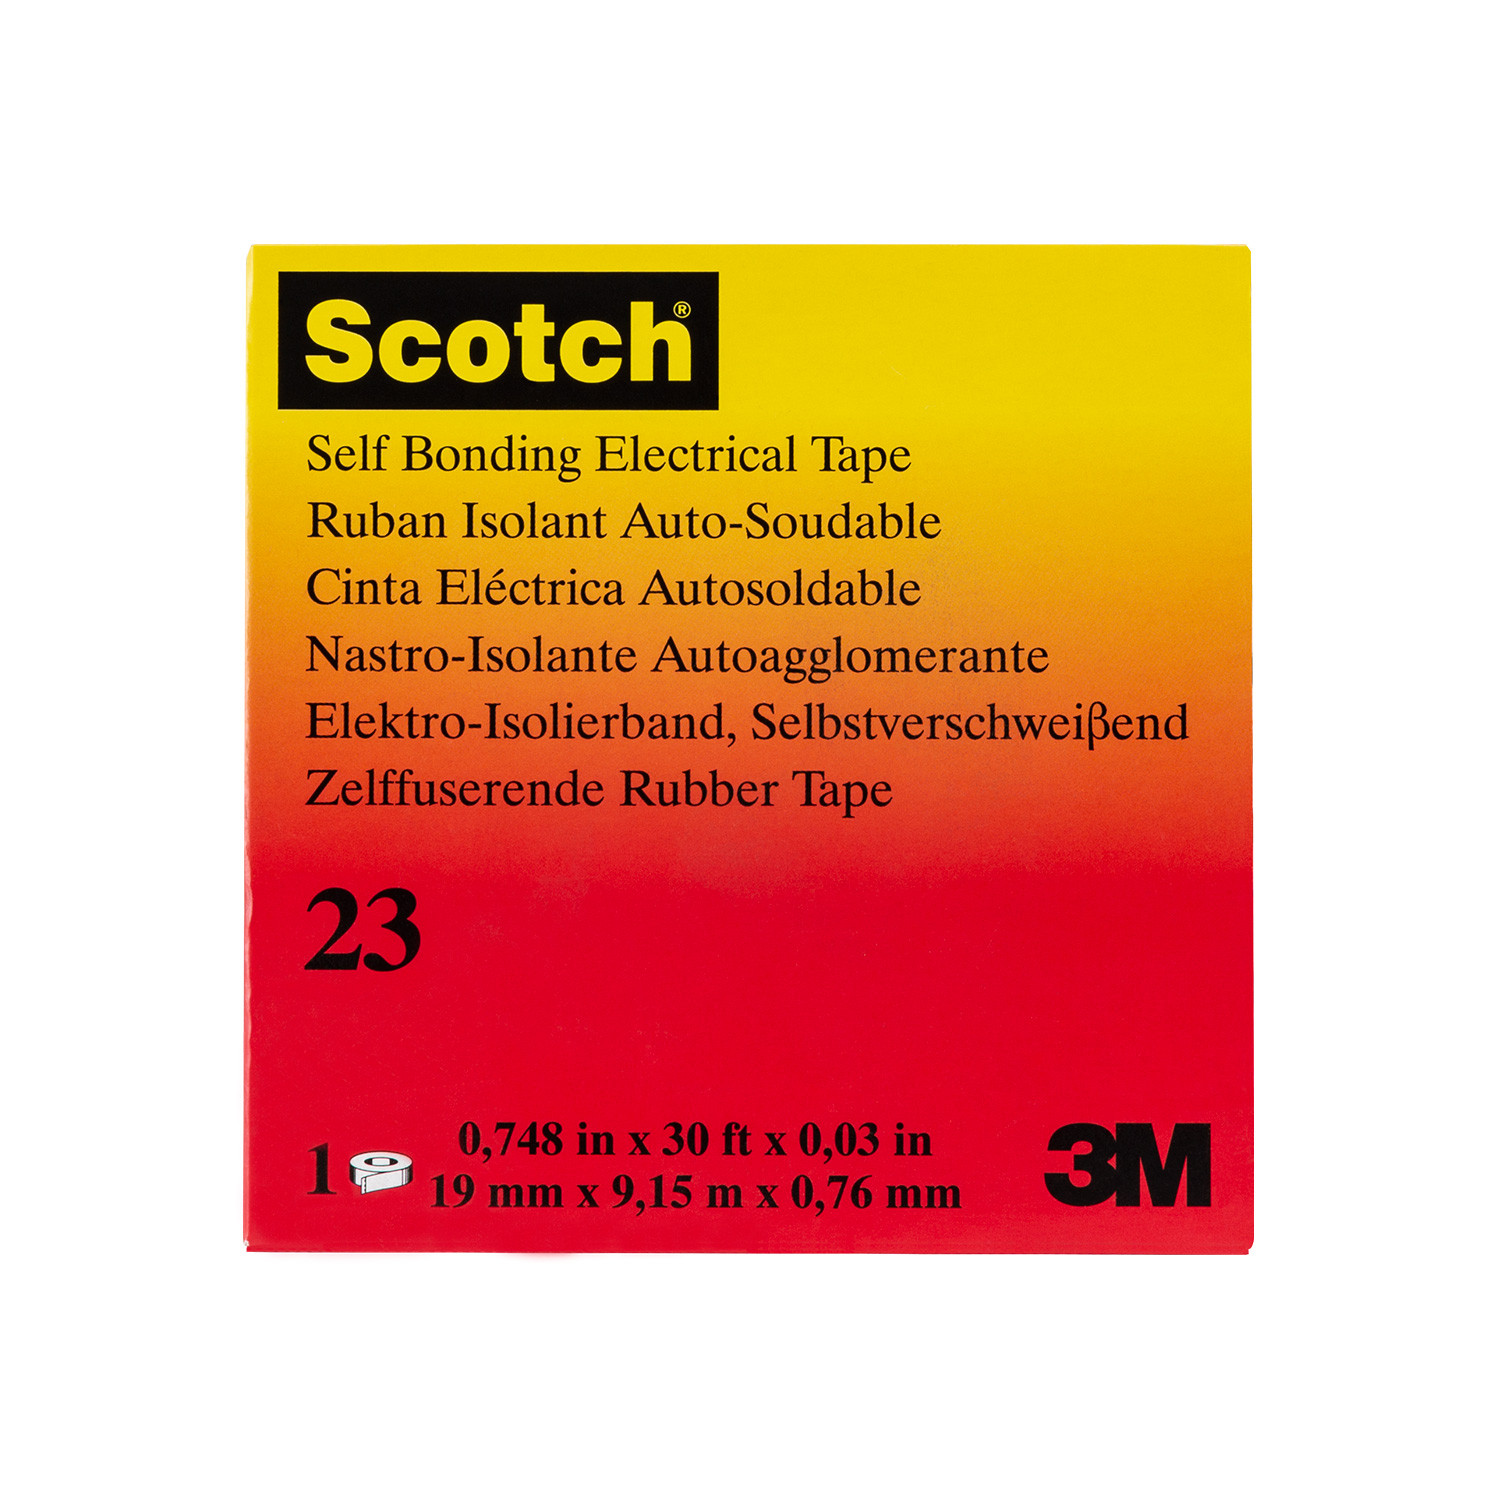 Nastro Isolante Autoagglomerante Scotch 23 19mm x 9.15m 3M